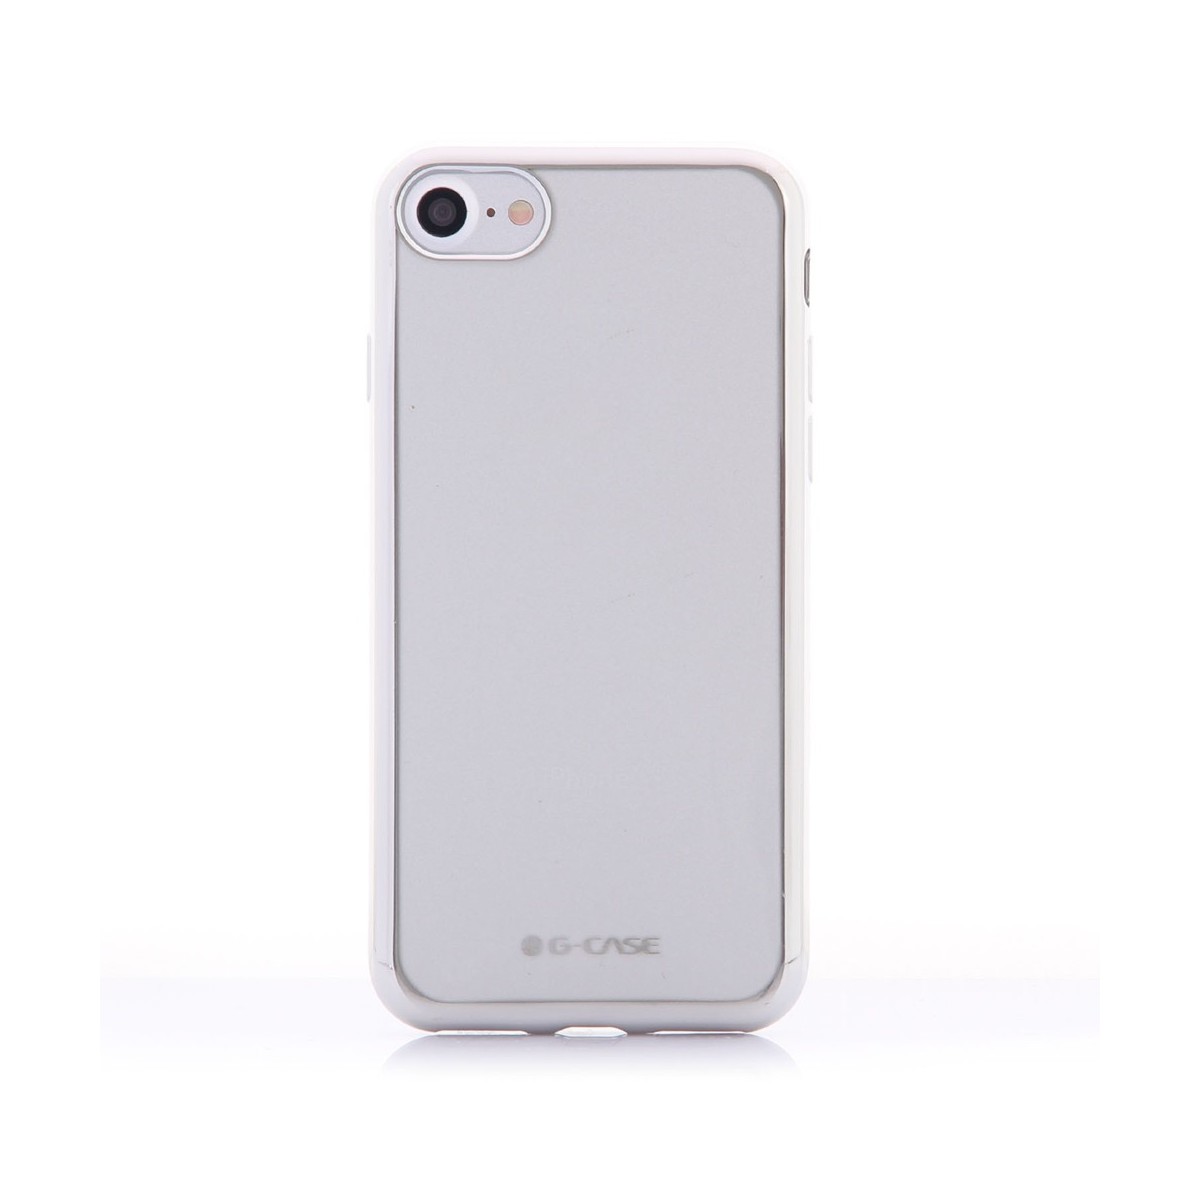 Coque iPhone 7 Transparente contour - G-Case